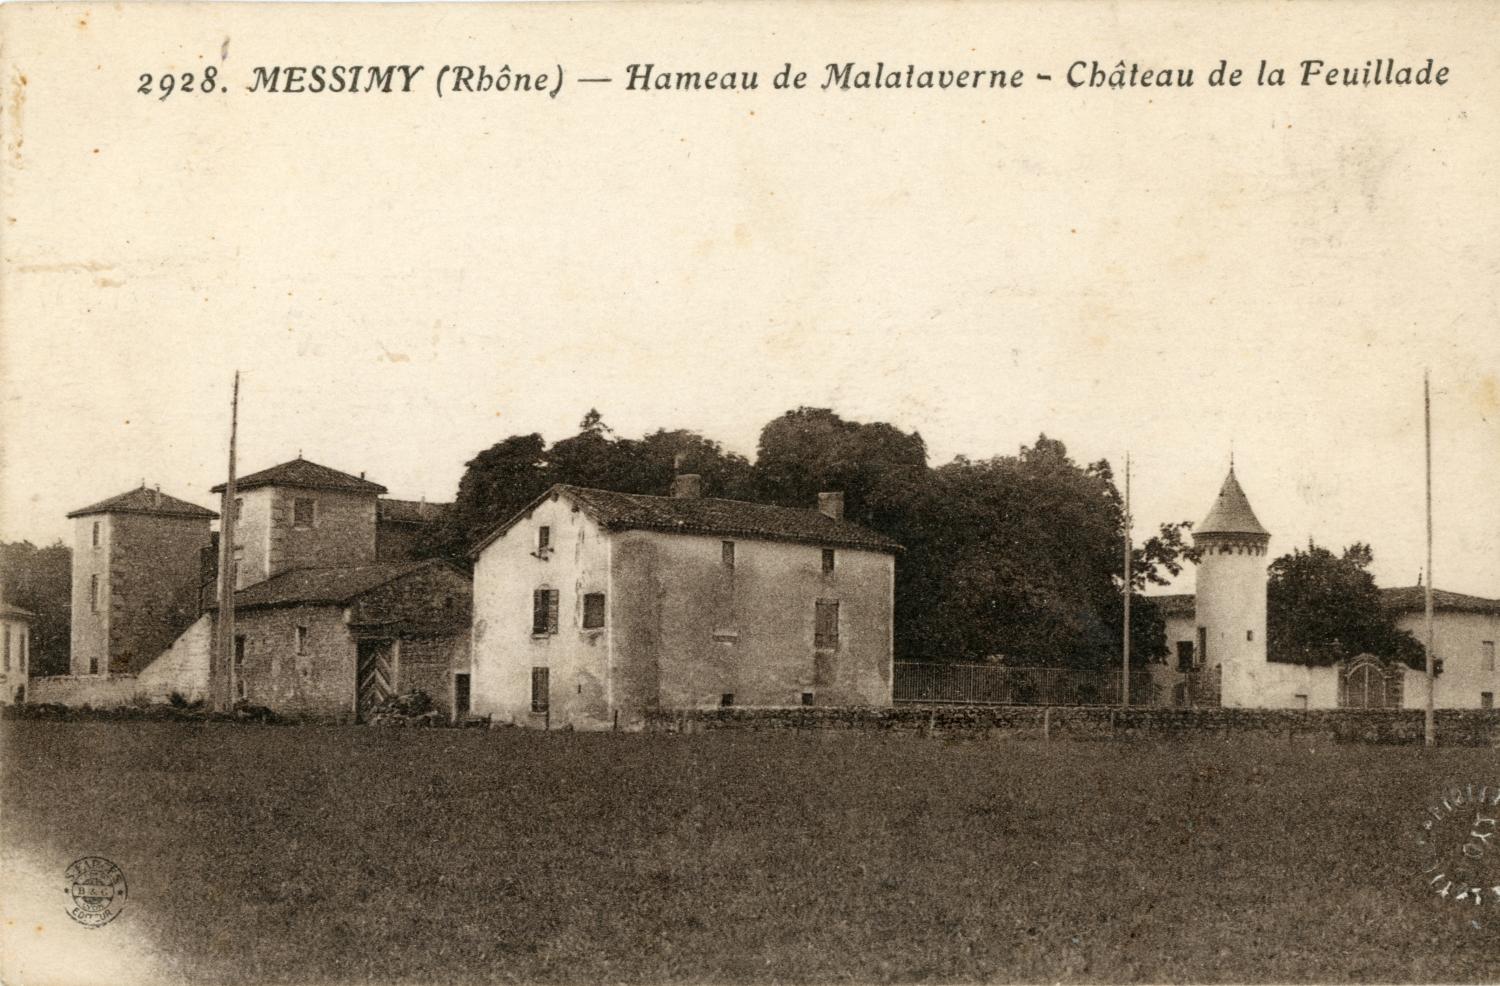 Messimy (Rhône). - Hameau de Malataverne - Château de la Feuillade